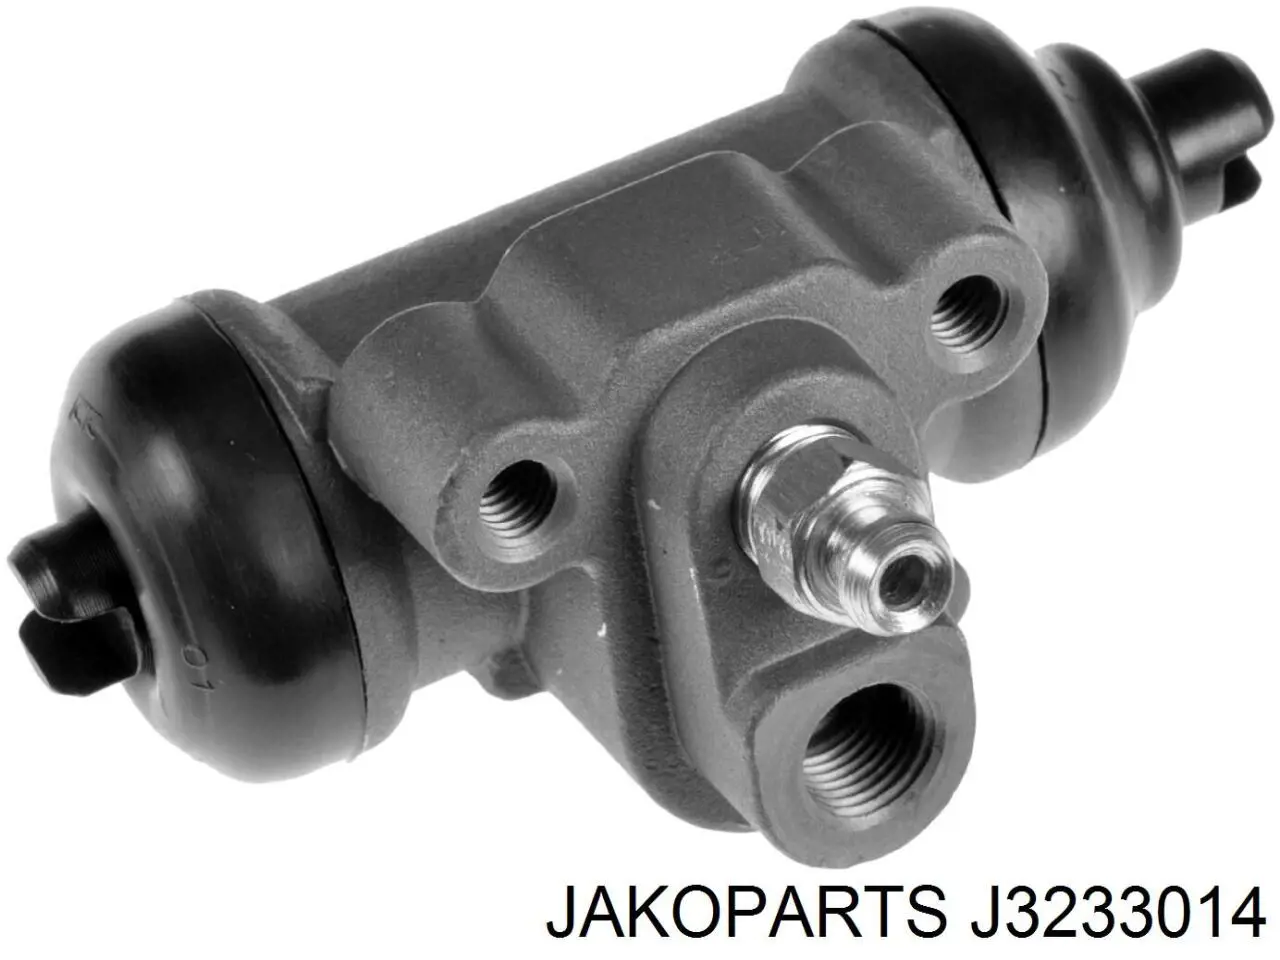 J3233014 Jakoparts cilindro de freno de rueda trasero